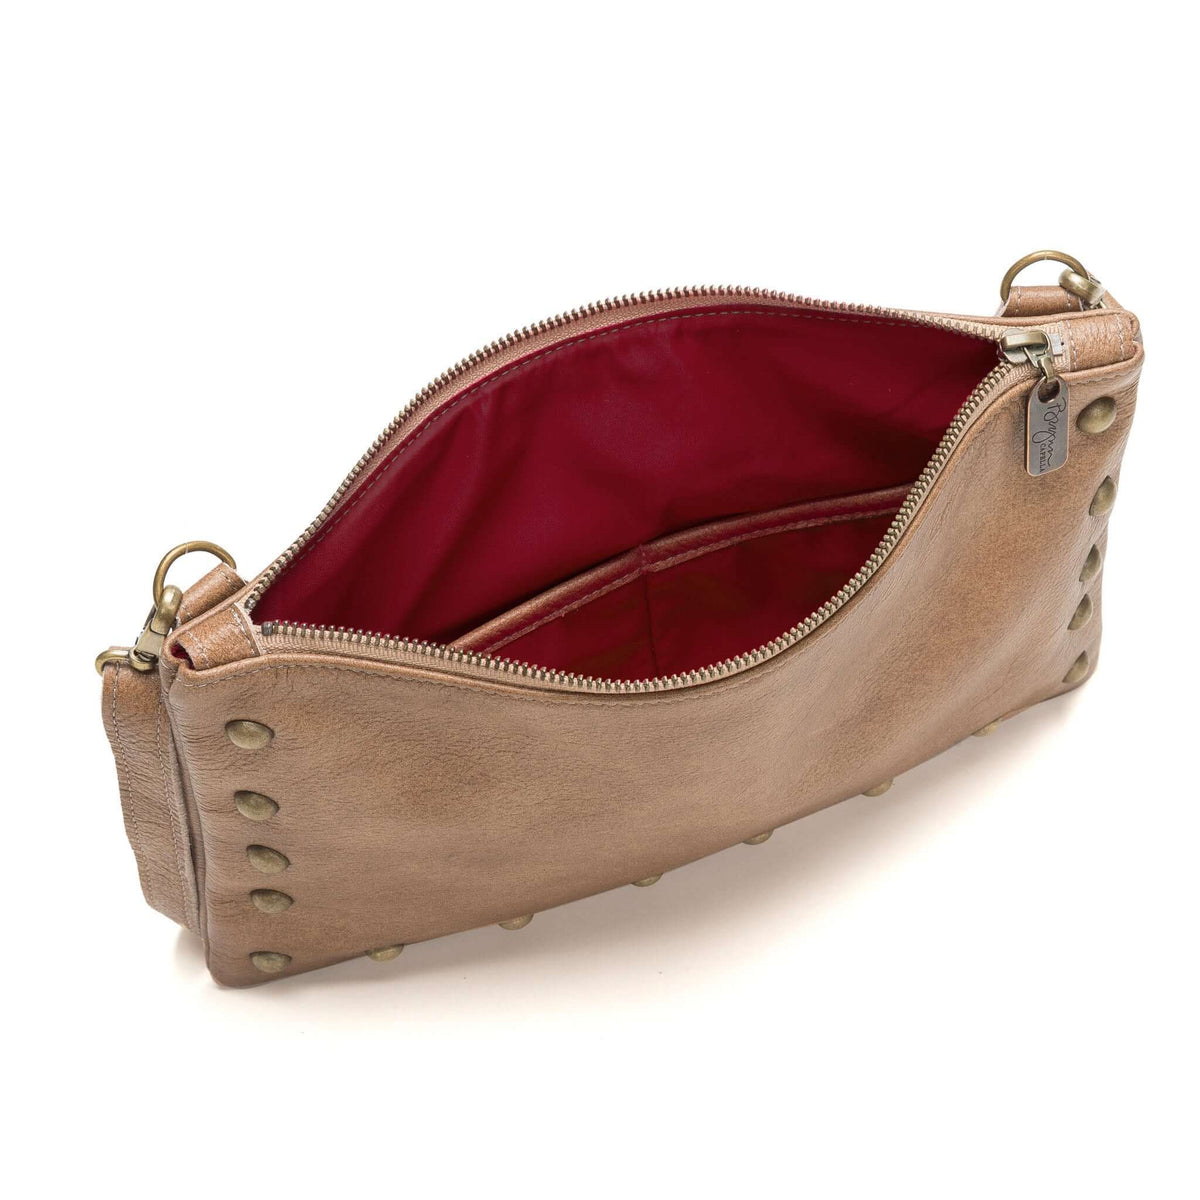 Studded Clutch Crossbody Bag - Golden Tan full grain leather - Brynn Capella, USA